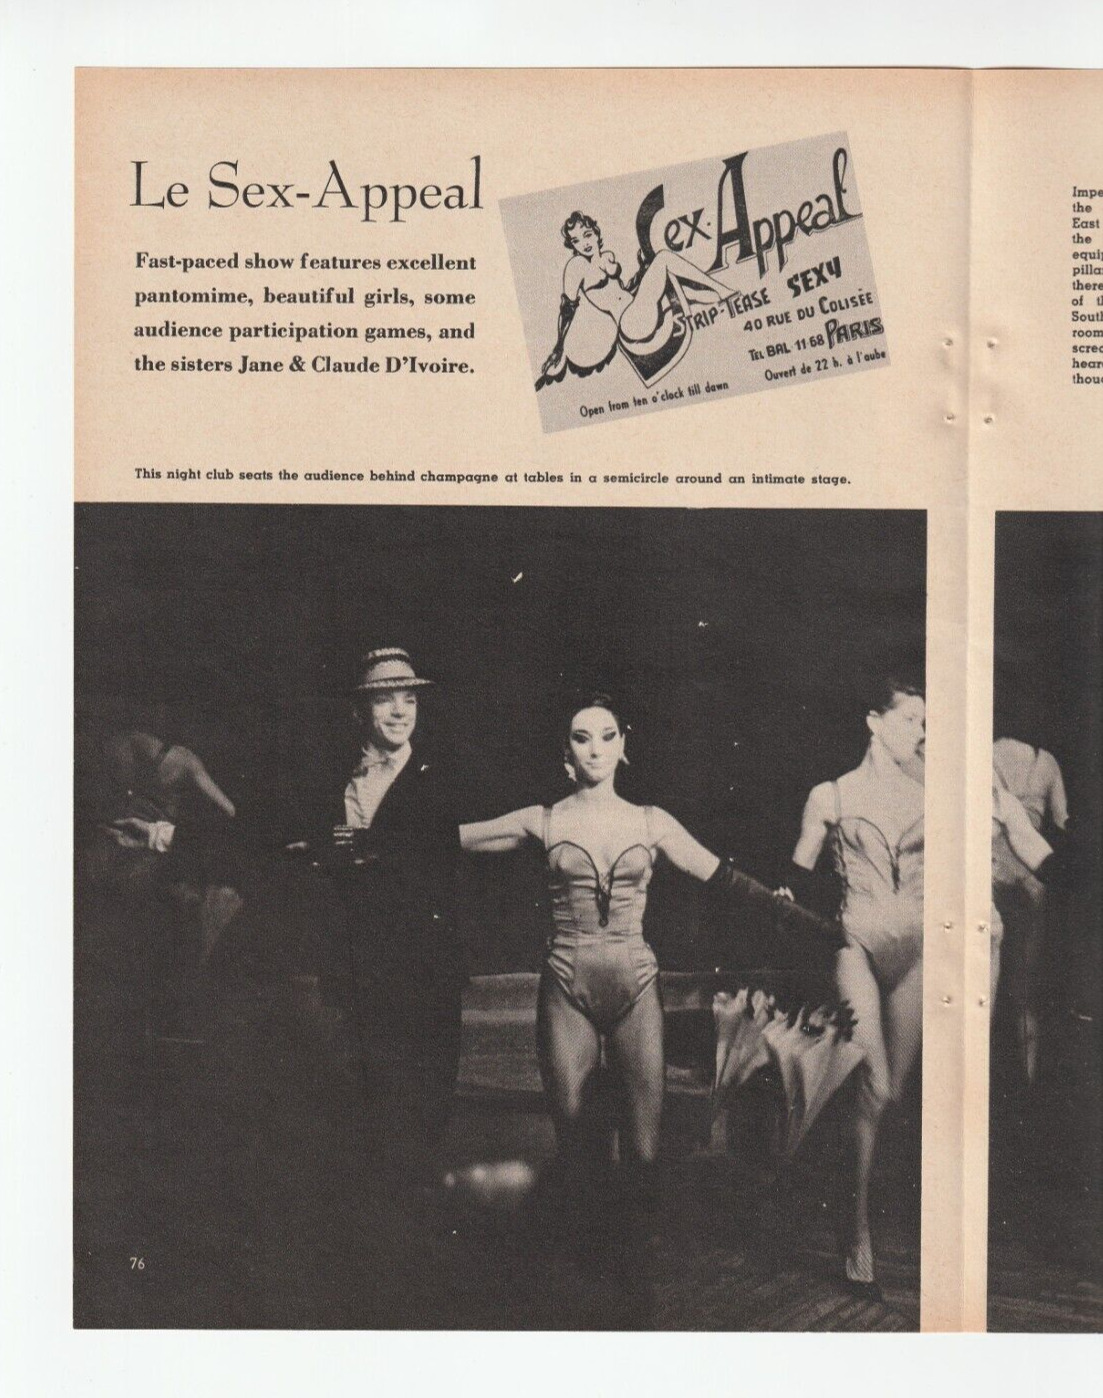 1962 SEX-APPEAL-Paris STRIP CLUB Magazine ARTICLE & PHOTOS~June/Claude D'Ivoire